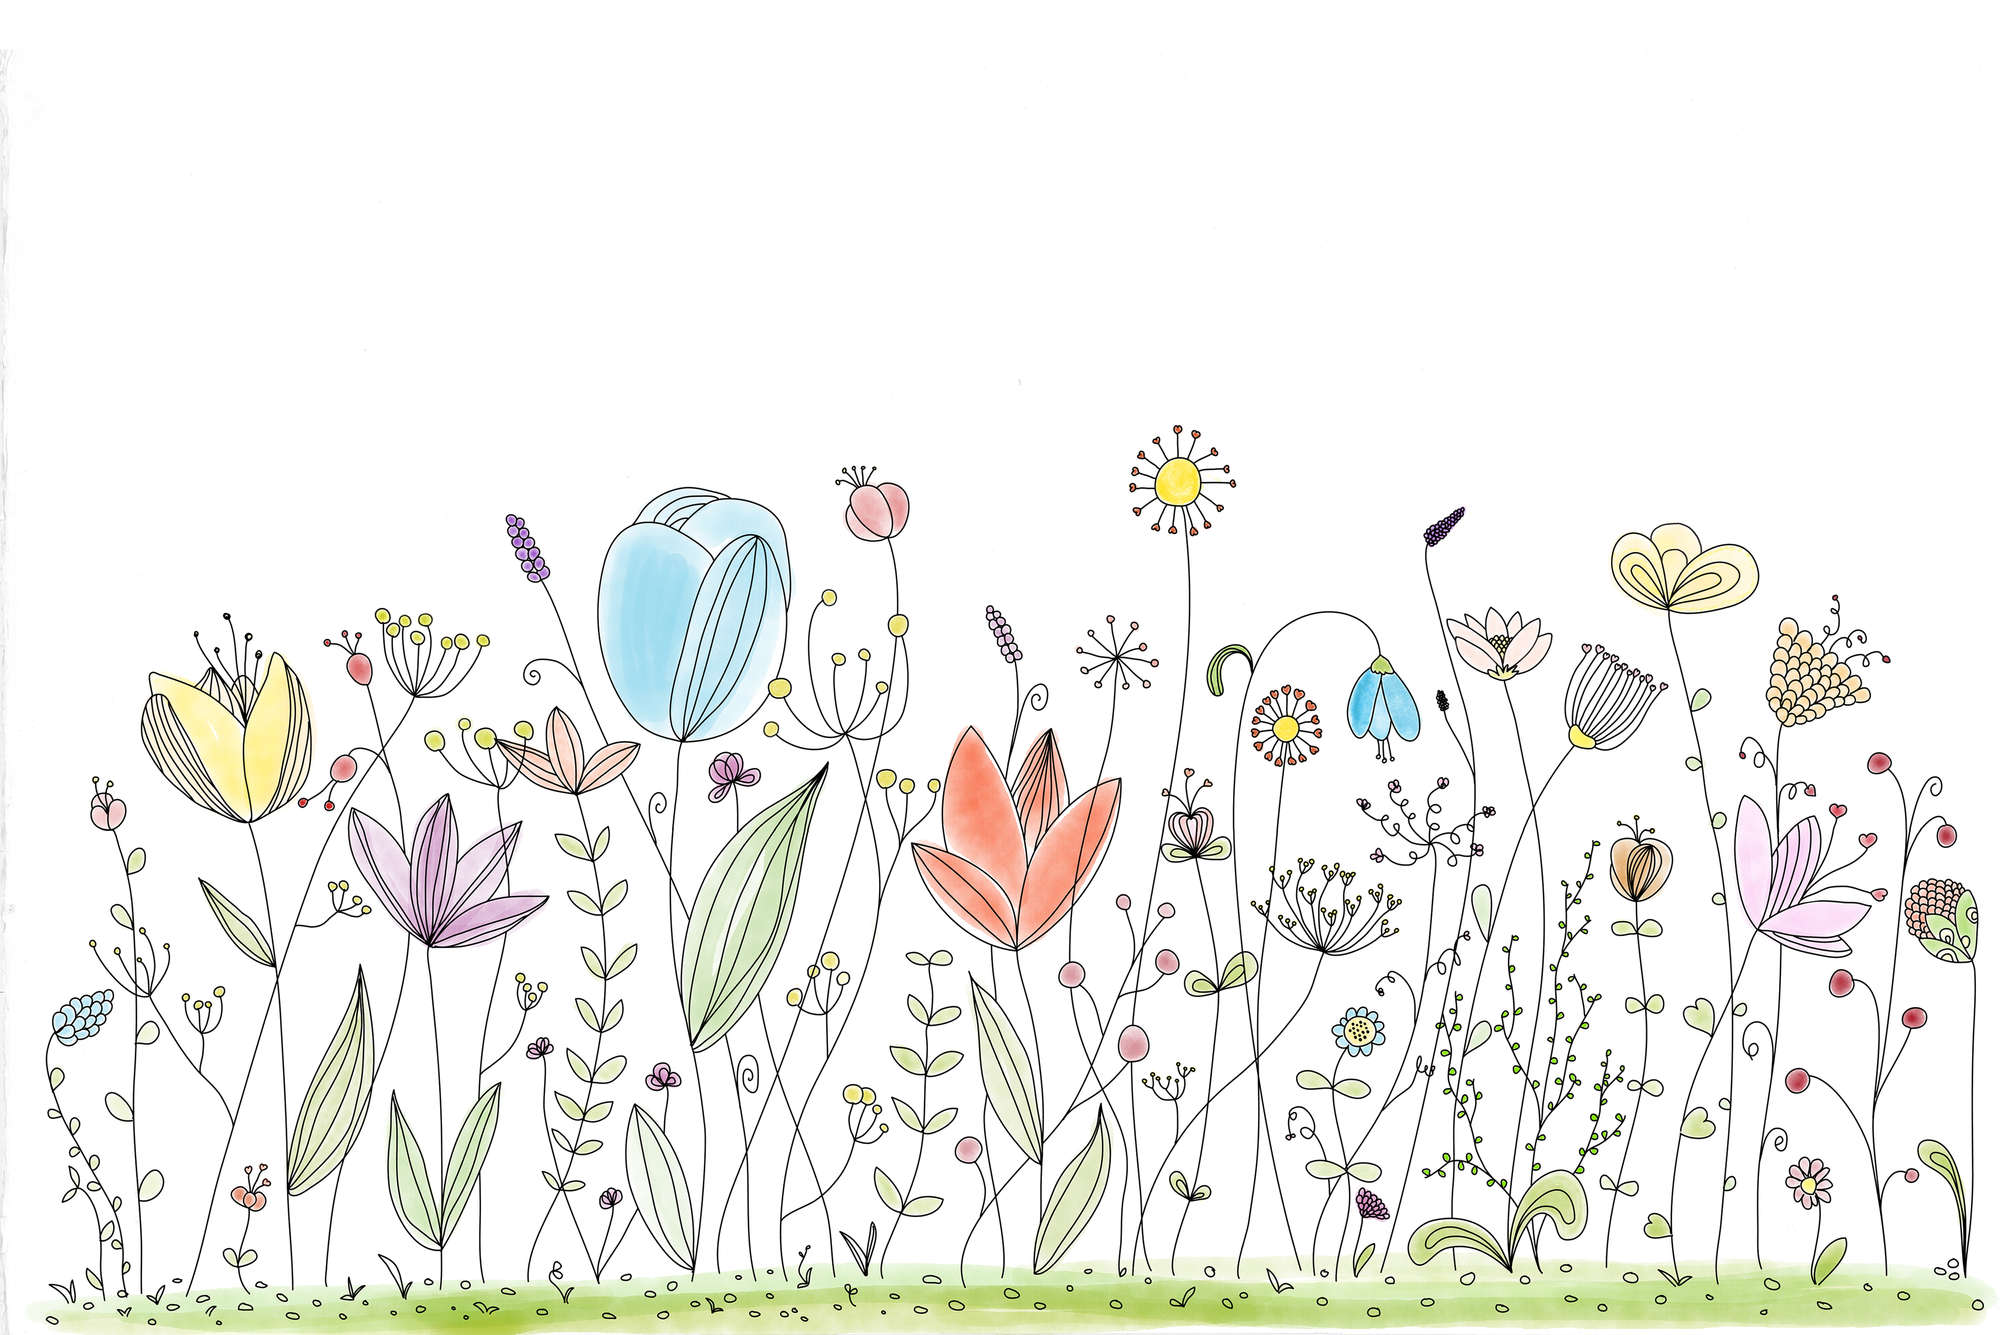             Kinder Fototapete mit bunten gezeichneten Blumen auf Premium Glattvlies
        